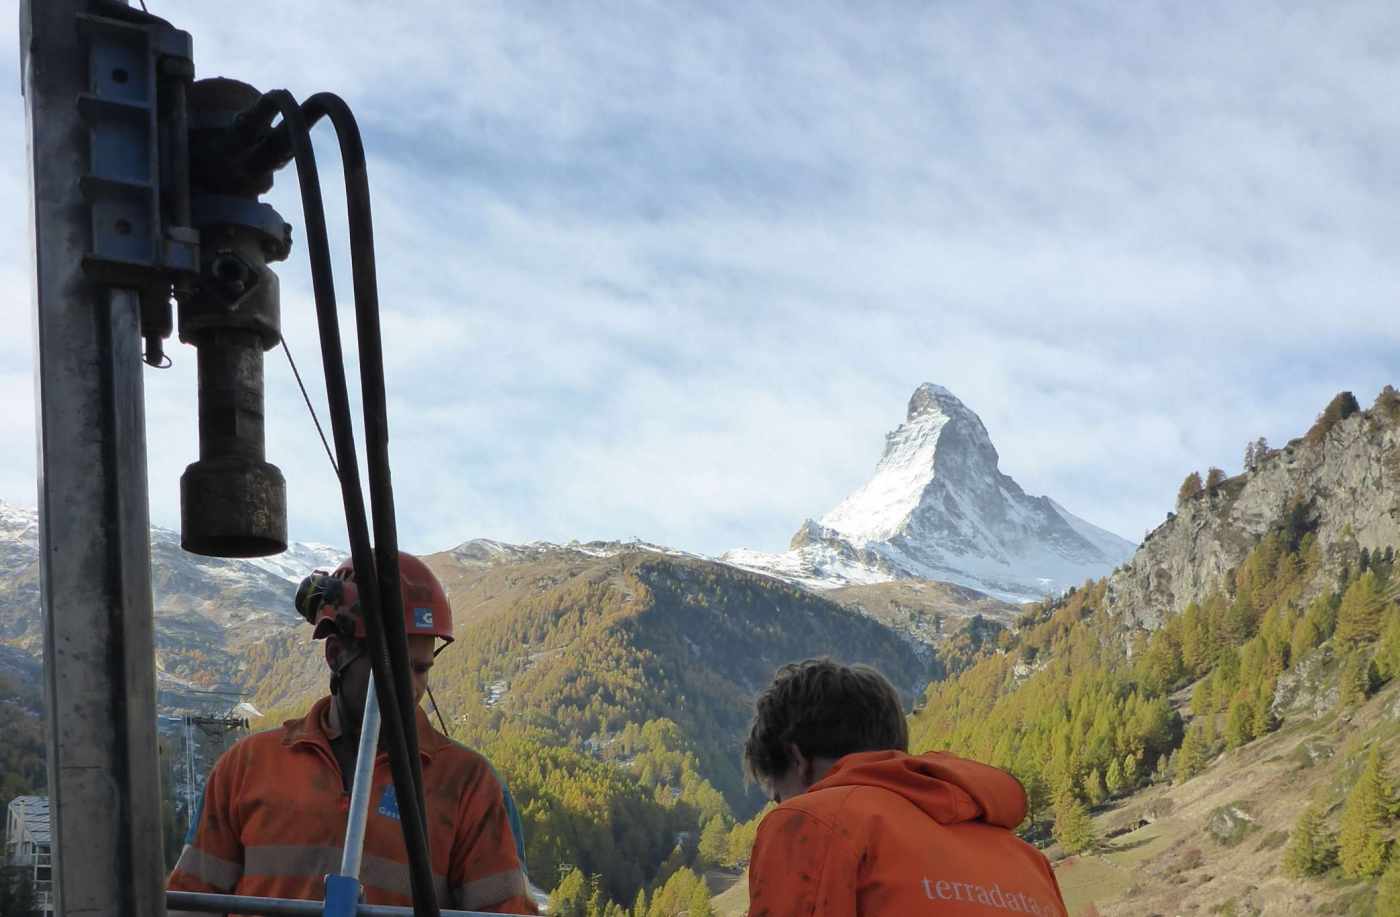 Projekt Bikini, Winkelmatten, Zermatt VS, Bohrlochscanning in steilem Gelände,,3 Bohrungen destruktiv bis 25m